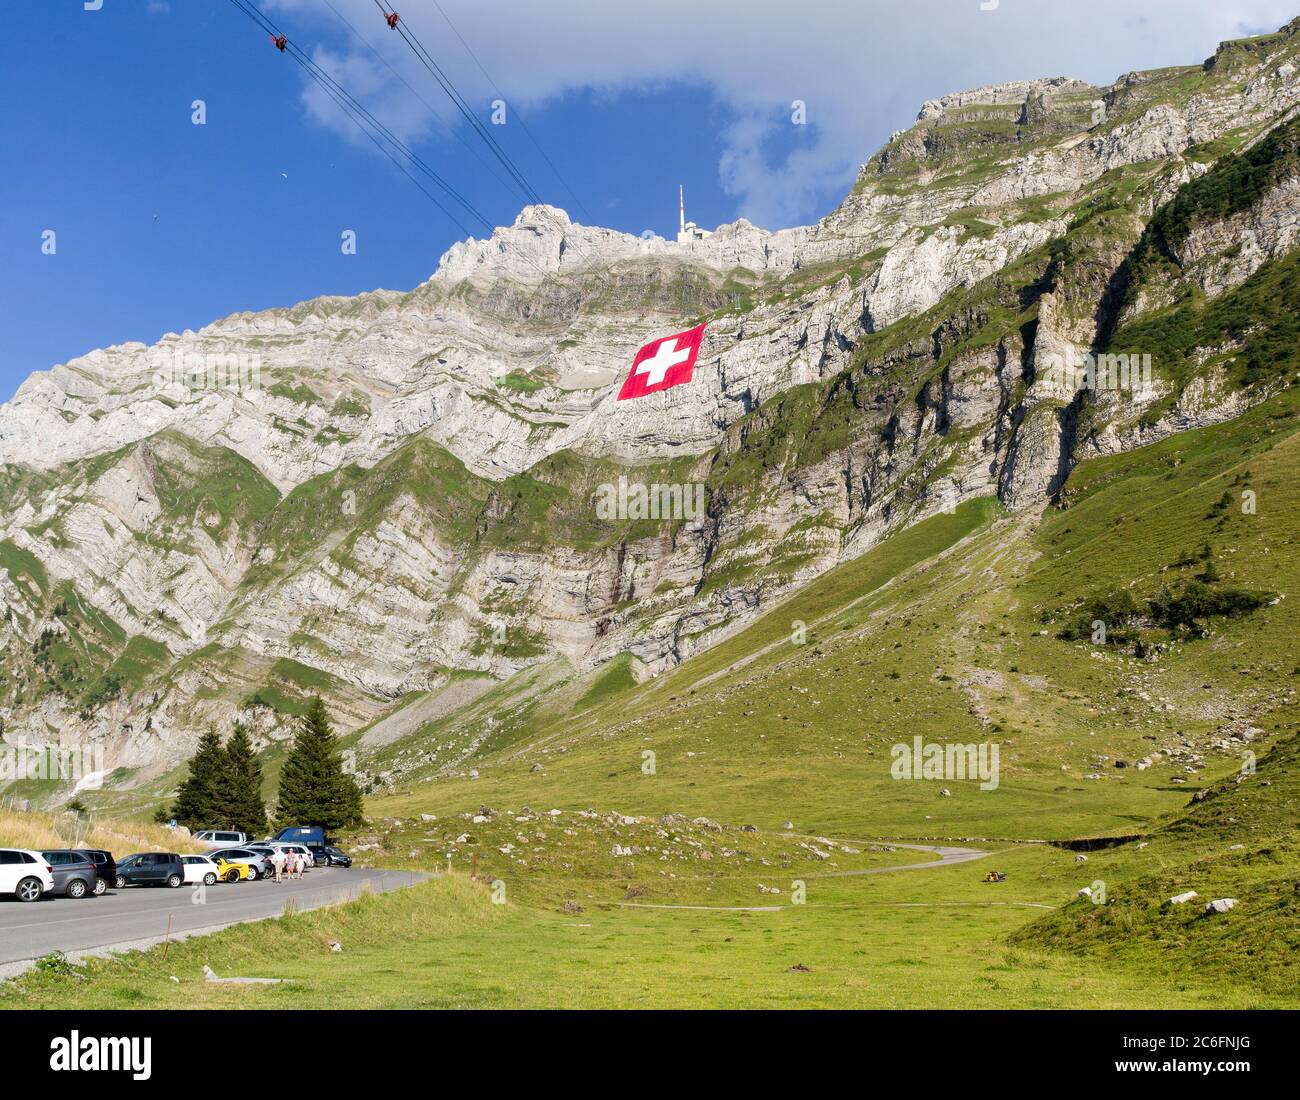 Schwaegalp, Svizzera: 31.07.2018 - grande bandiera nazionale svizzera (80mx80m, 700 kg), che è la più grande bandiera svizzera del mondo) è appesa al m Saentis Foto Stock